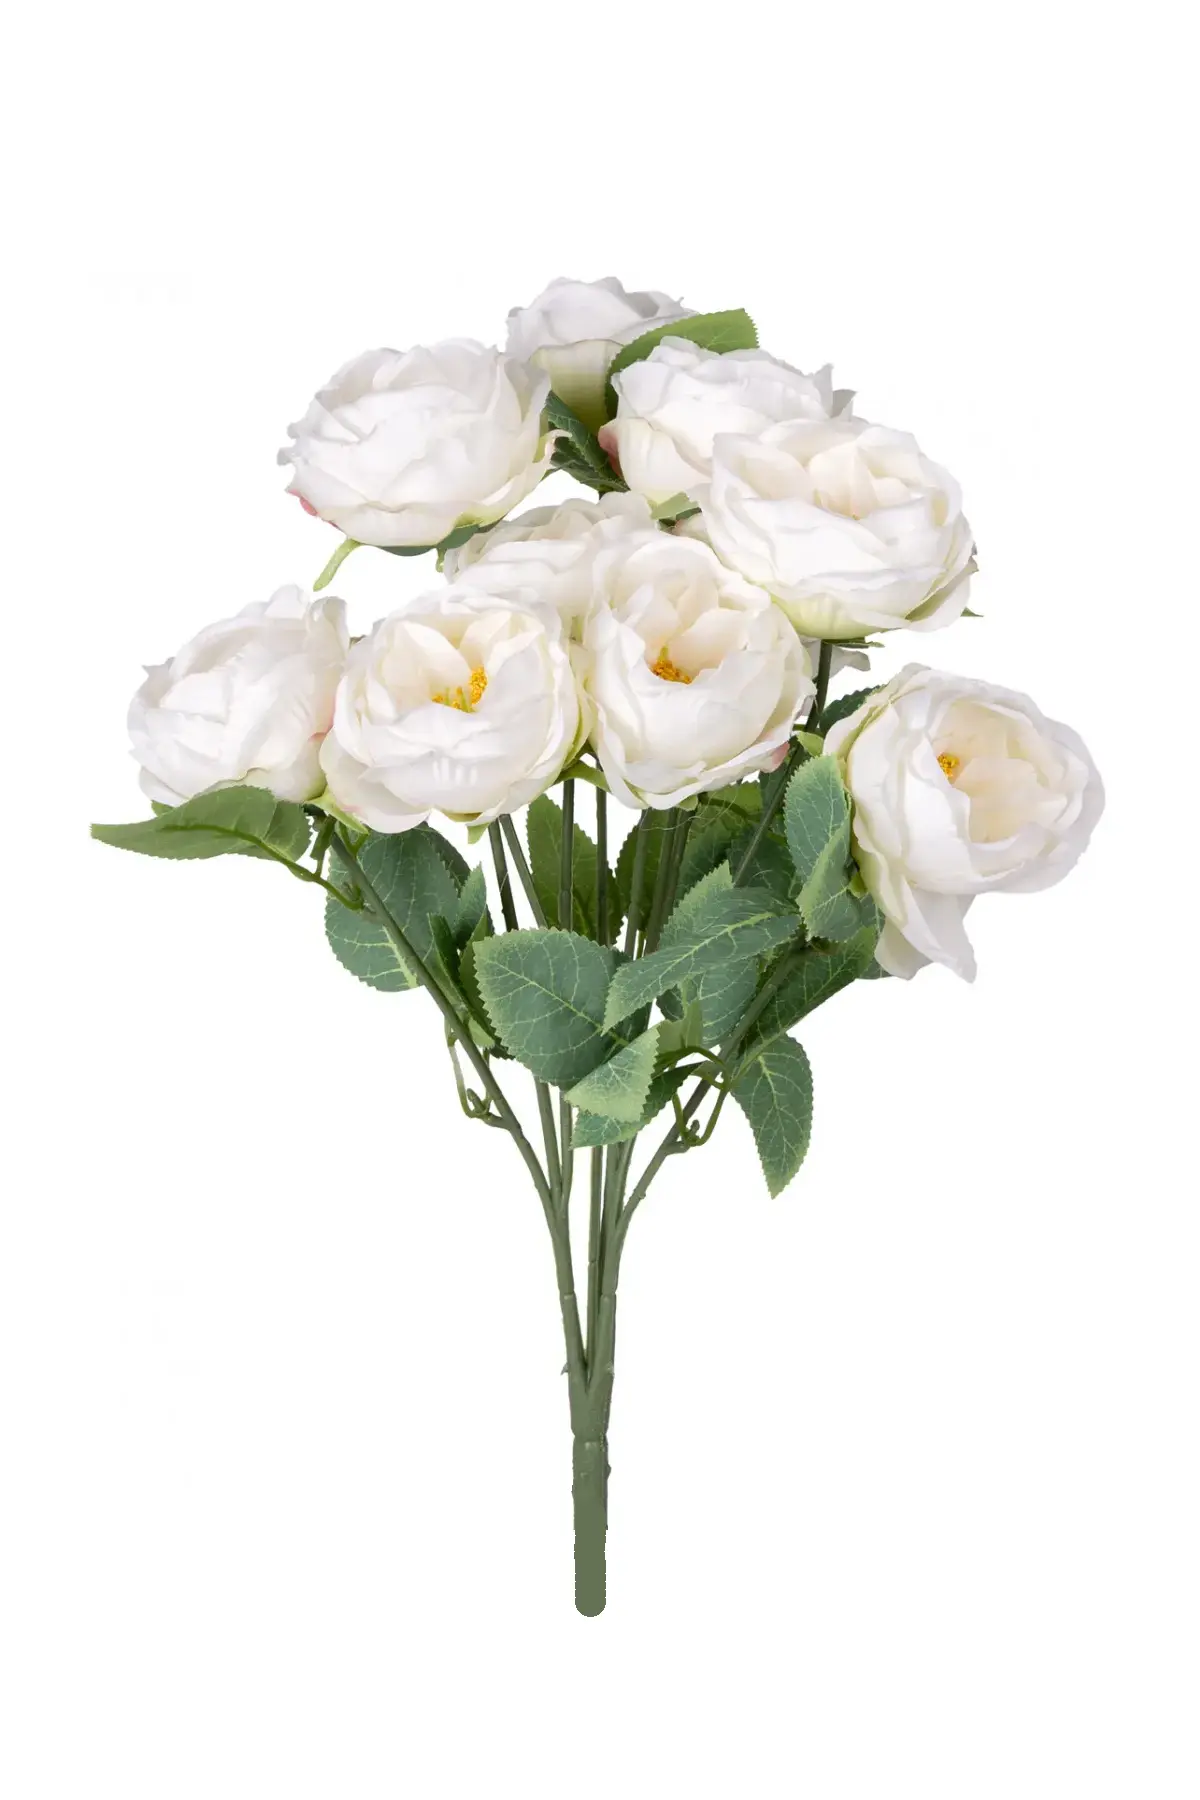 Yapay Çiçek Deposu - Yapay Çiçek 10 Dallı Catalina Rose 45 cm Beyaz